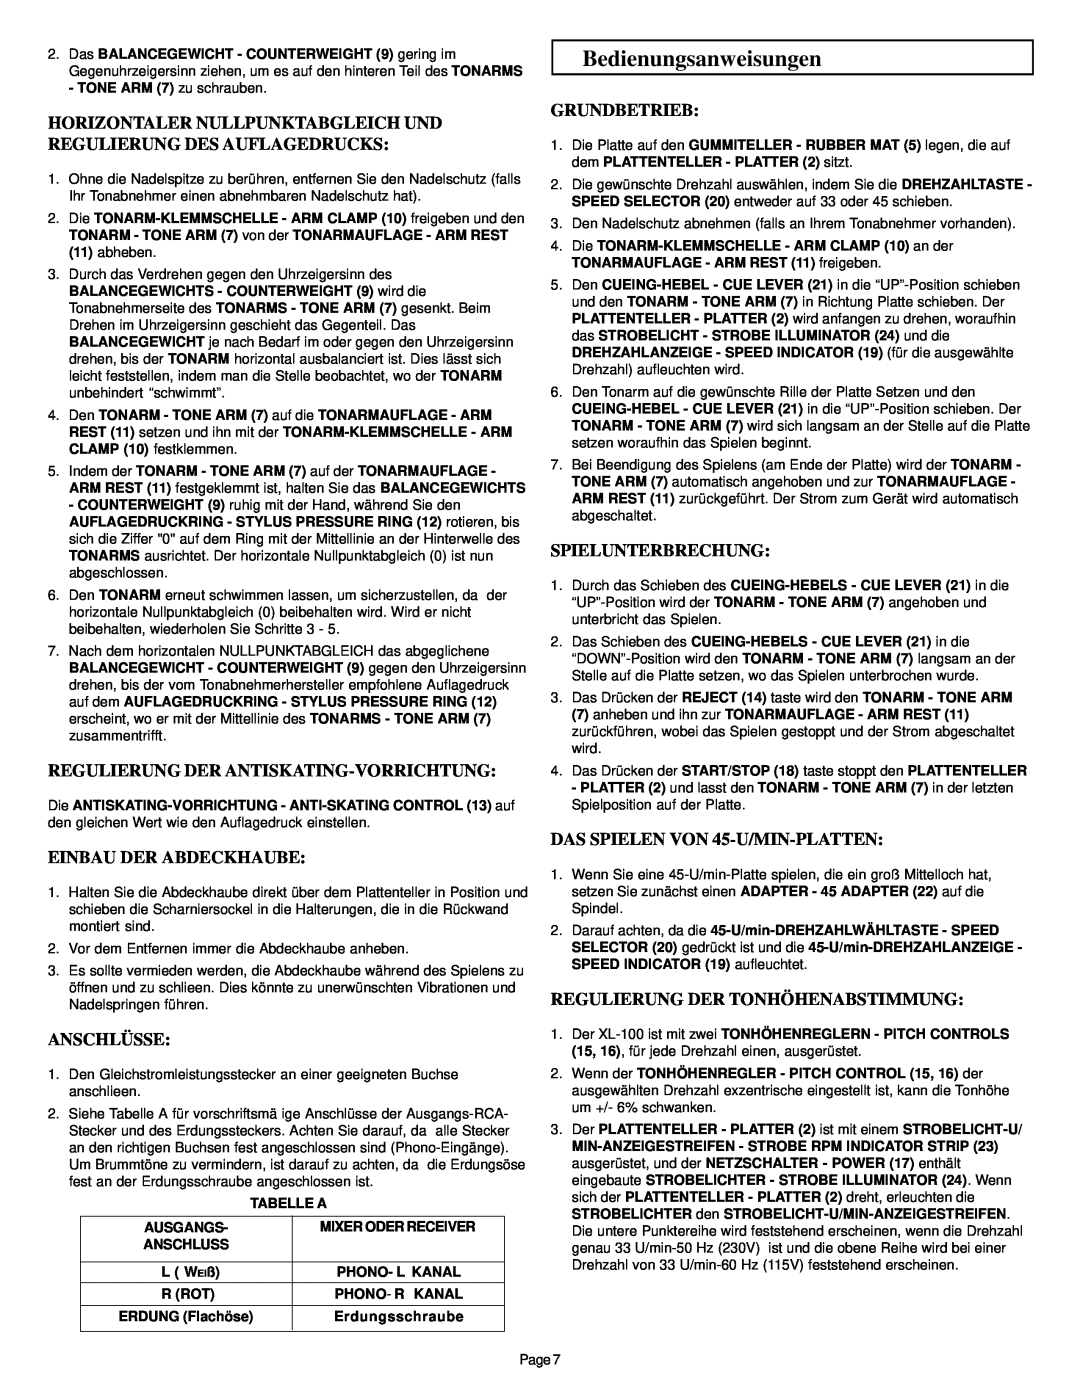 Gemini XL-100 manual Bedienungsanweisungen, Regulierung Der Antiskating-Vorrichtung, Einbau Der Abdeckhaube, Anschlüsse 